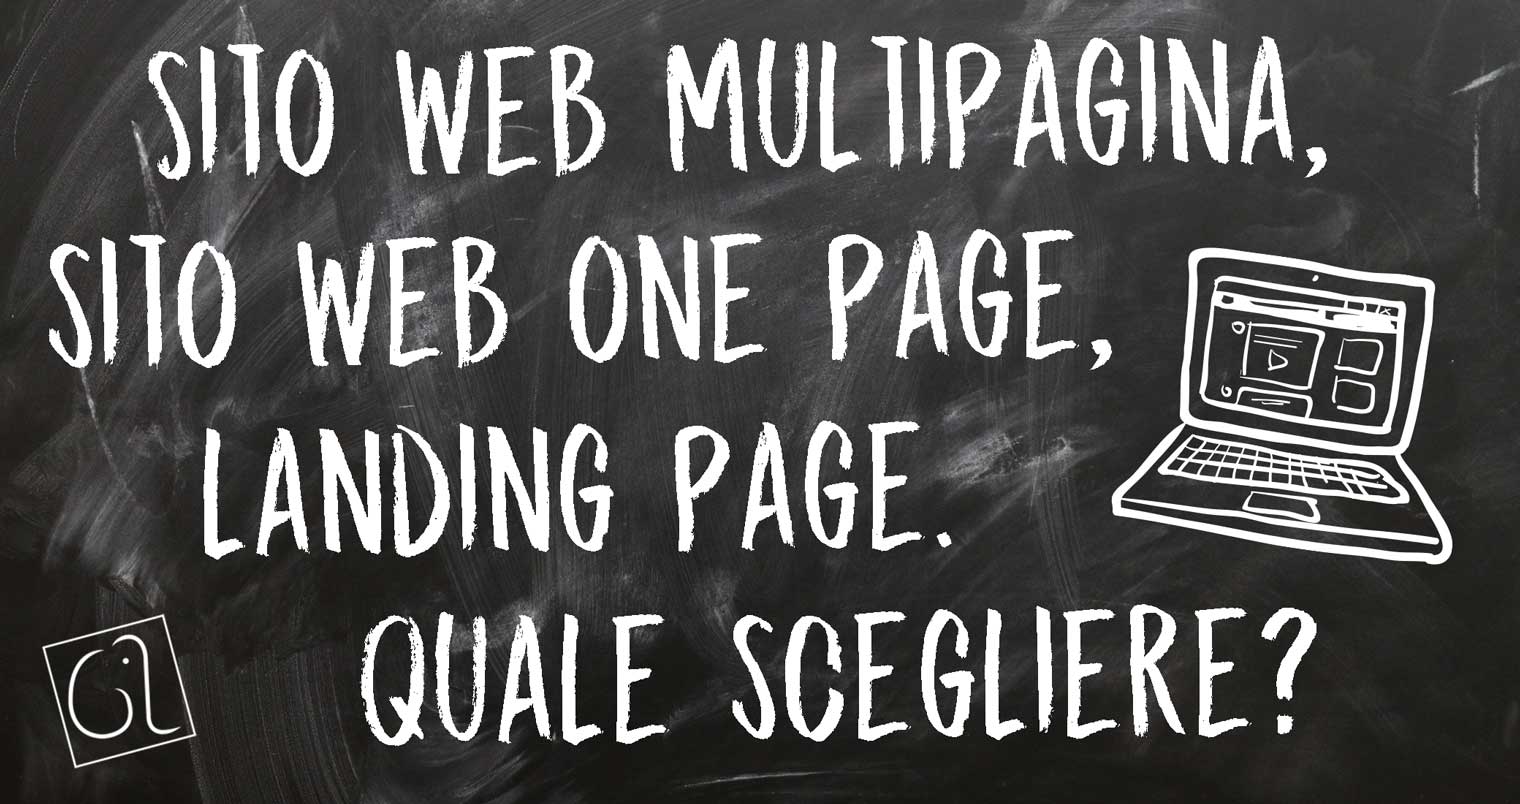 Sito web multipagina, sito web one page, landing page. Quale scegliere?